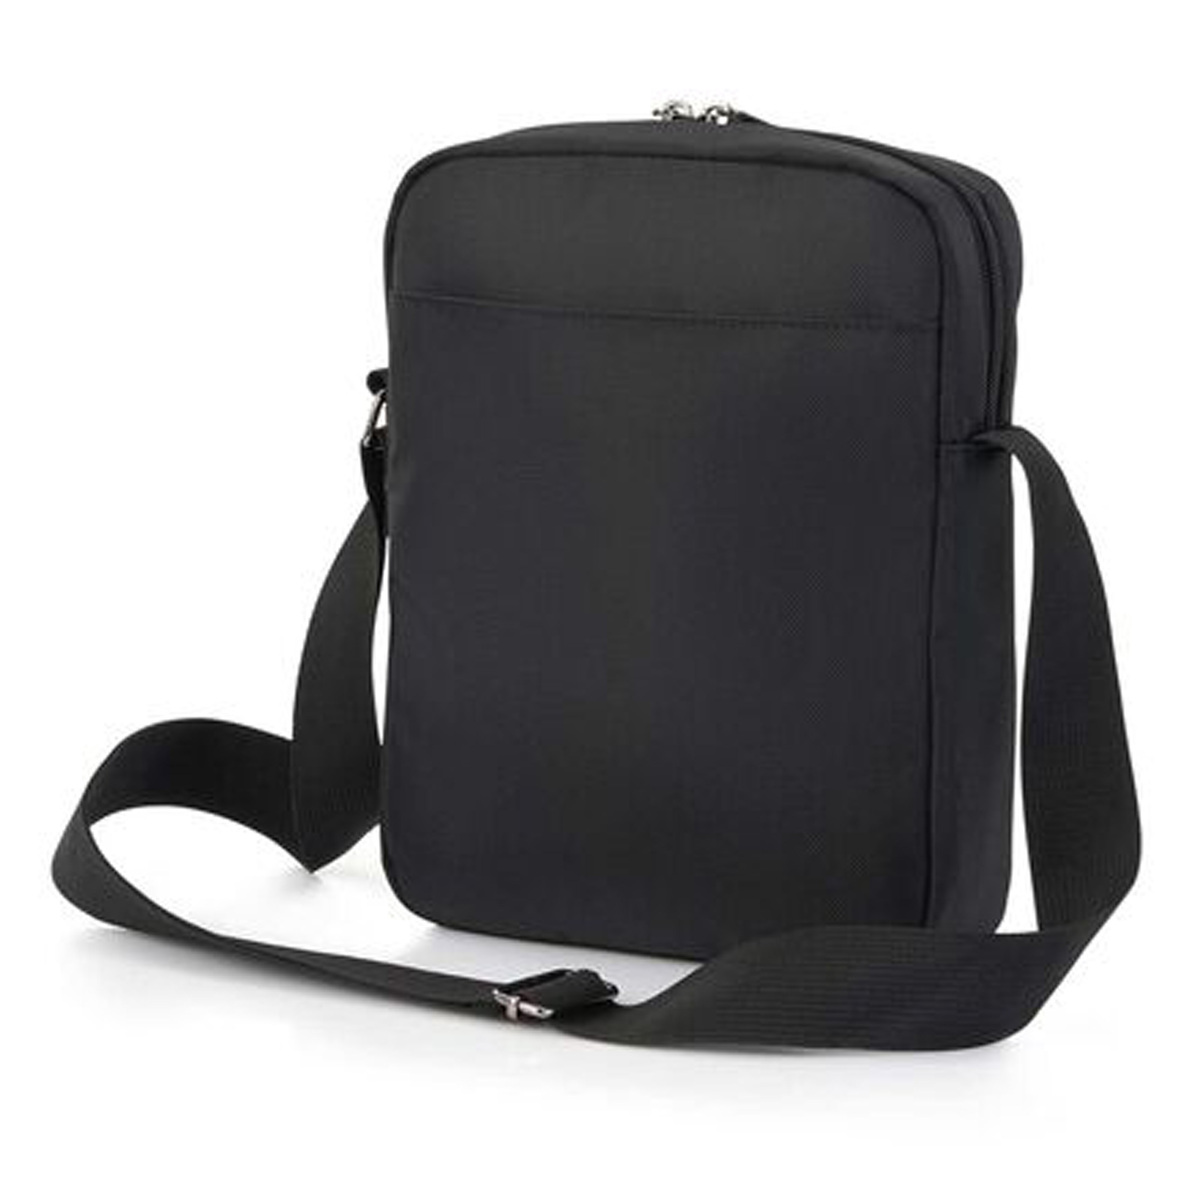 American Tourister Segno Shoulder Bag, 21 cm, Black, HD1 Online at Best ...